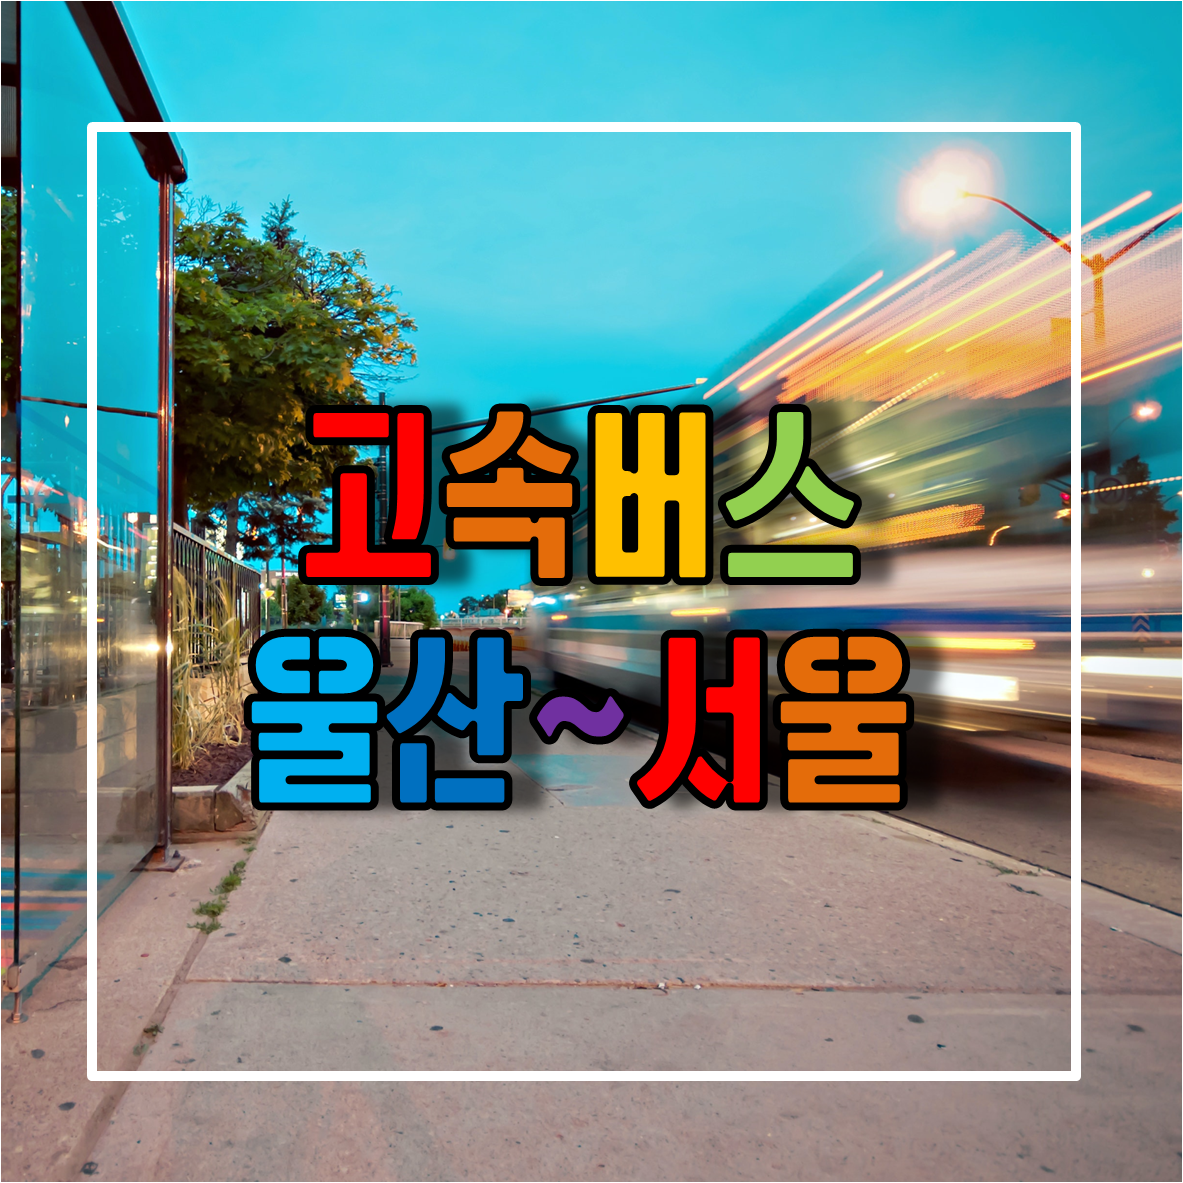 울산에서 서울가는 고속버스 시간표